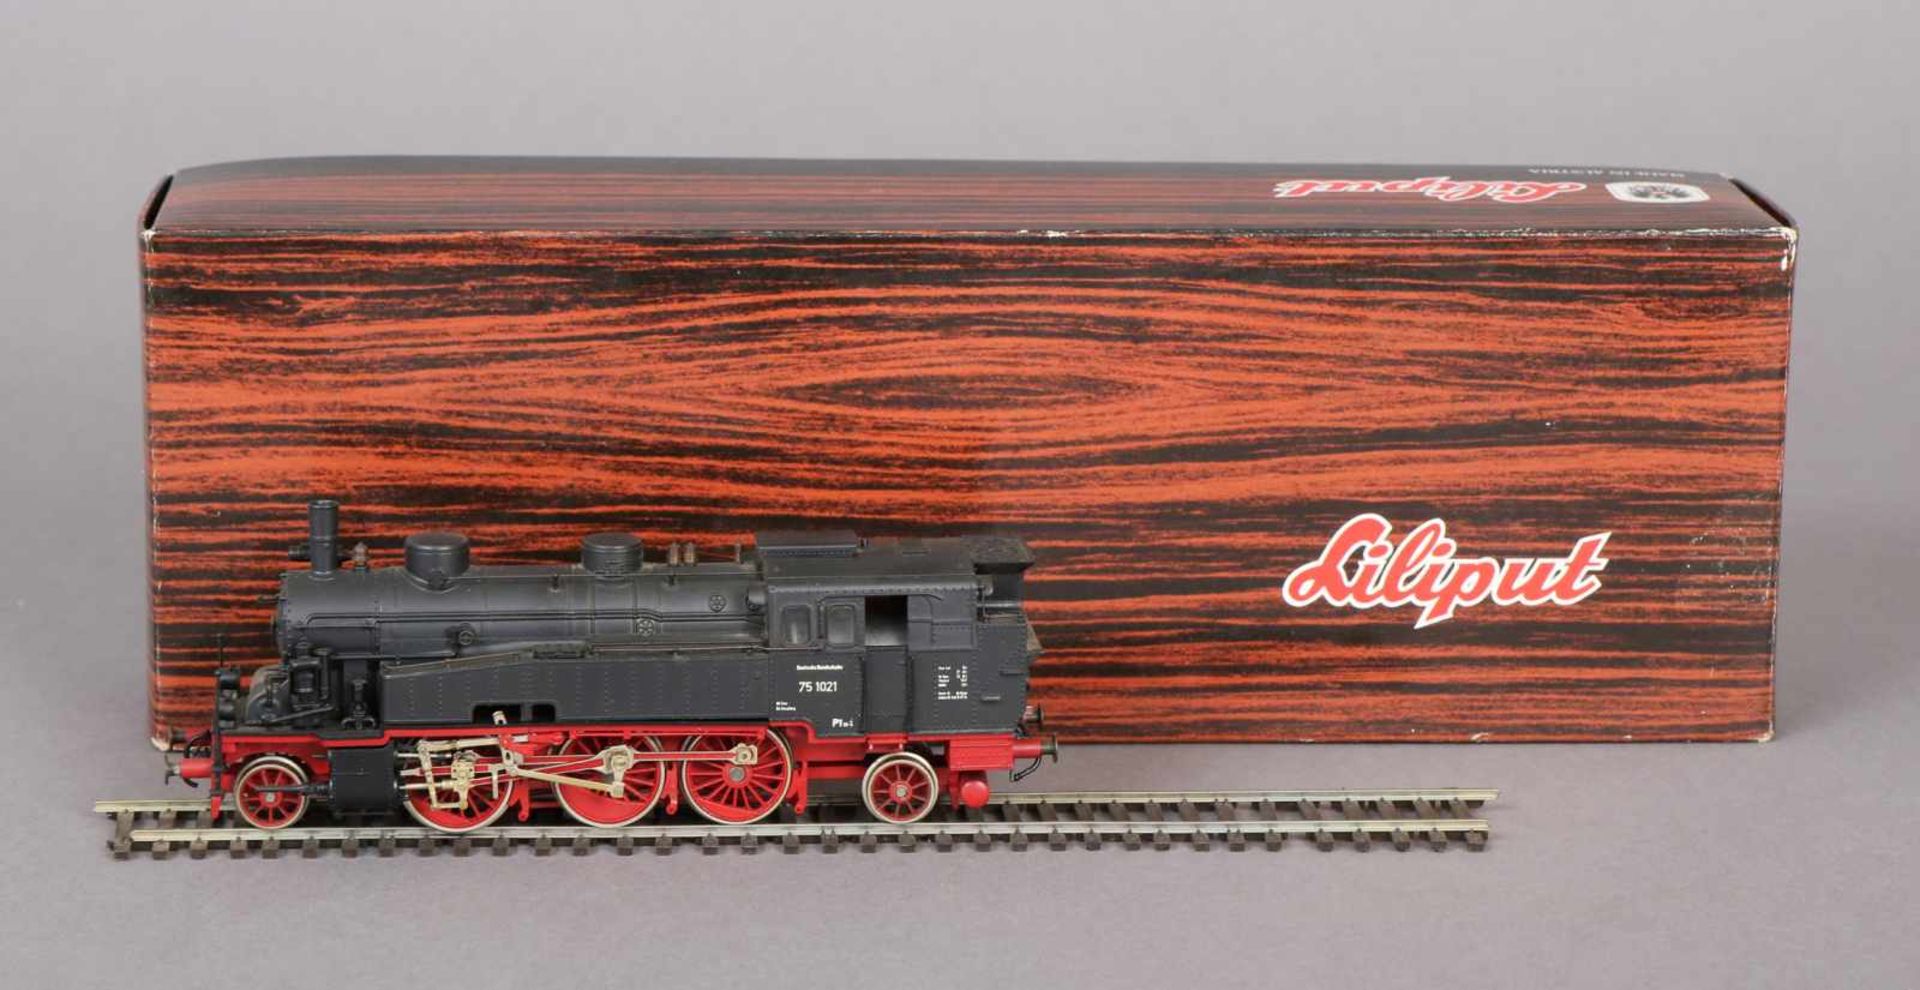 Liliput Modell-Lok Modell DR 75 1021, schwarz-rote Ausführung, in original Box, unbespielt, aus